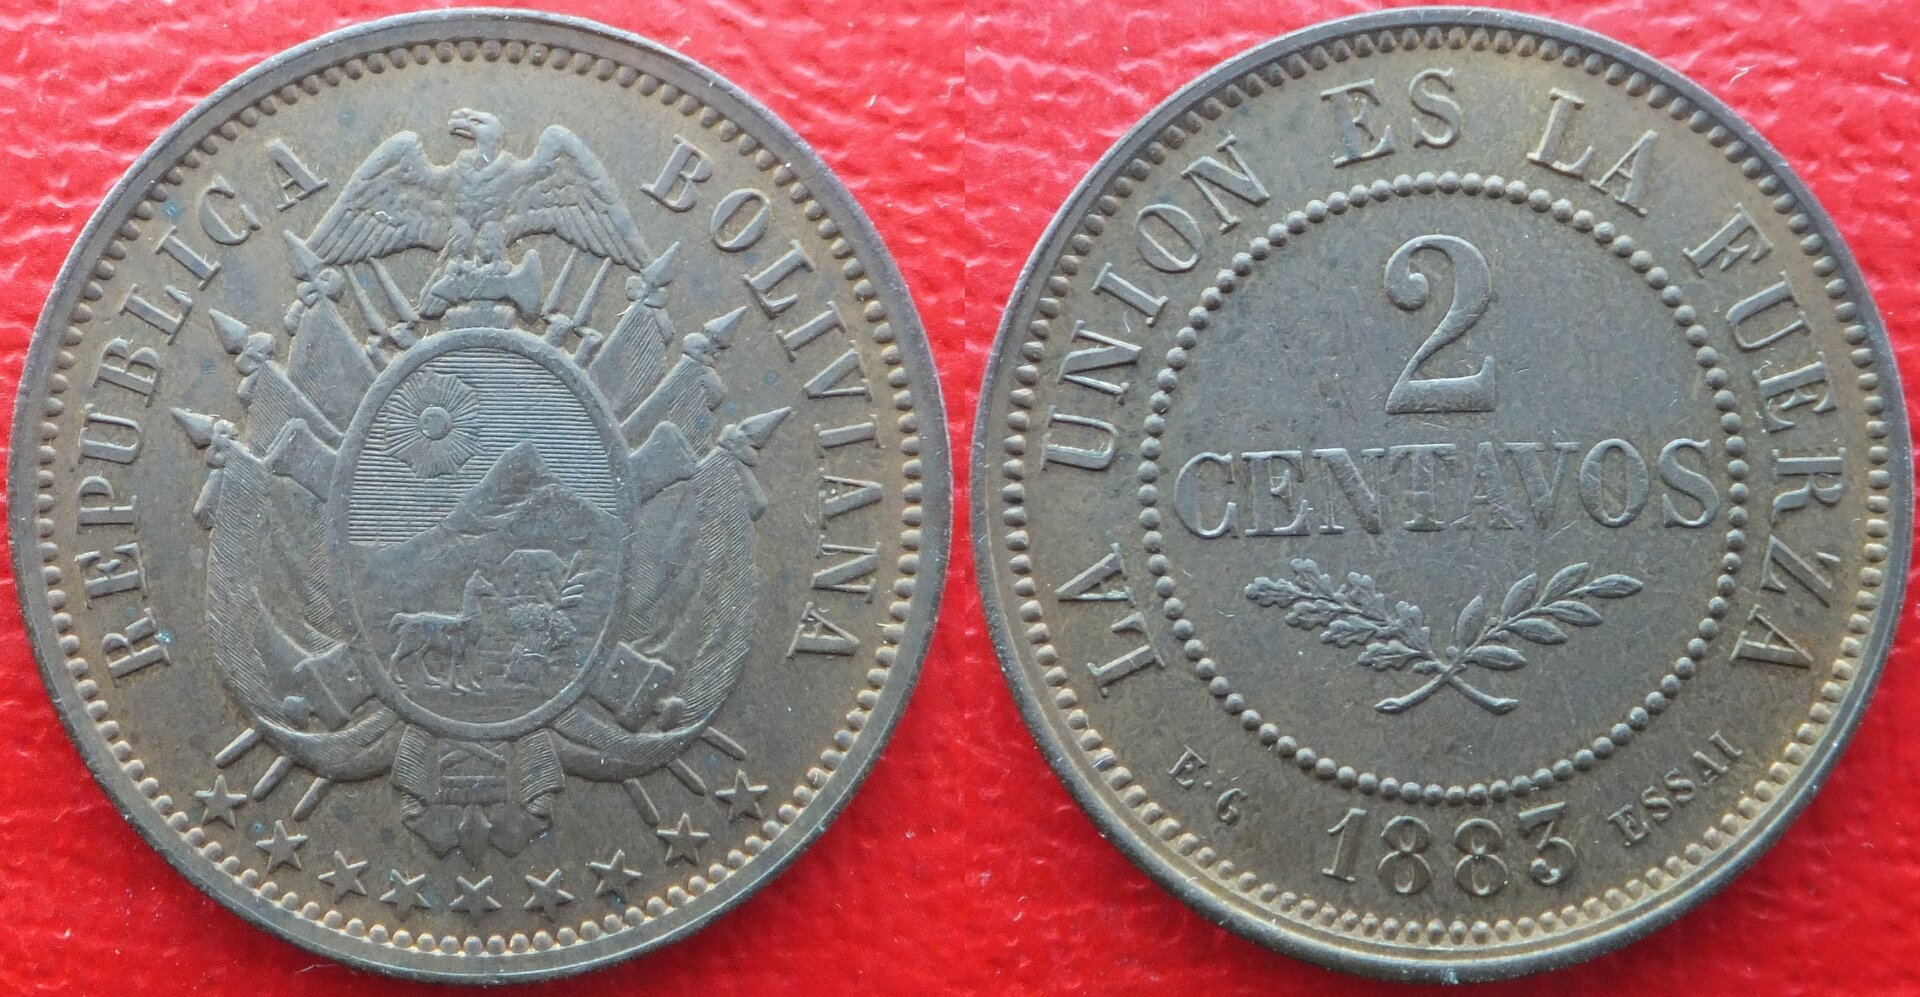 Bolivia 2 centavos 1883 EG (essai) (3).jpg